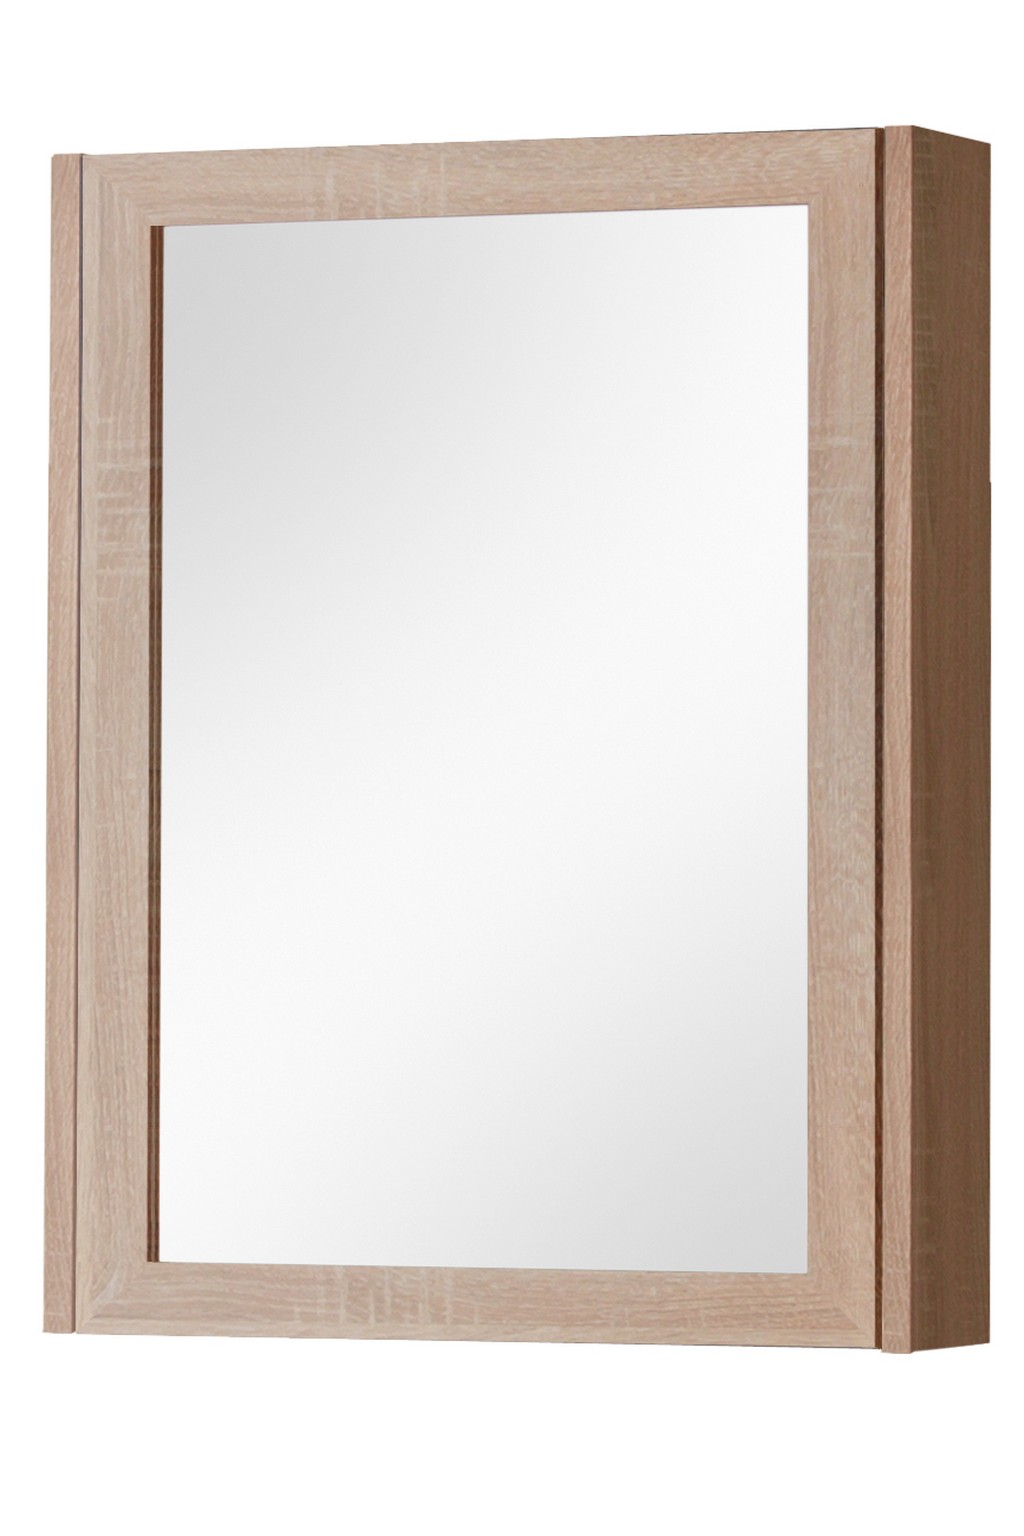 Зеркало в ванную 50 см. Зеркало 50x160 дуб сонома. Навесной шкаф с зеркалом в прихожую. Навесной шкаф в ванную с зеркалом. Шкафчик настенный с зеркалом.